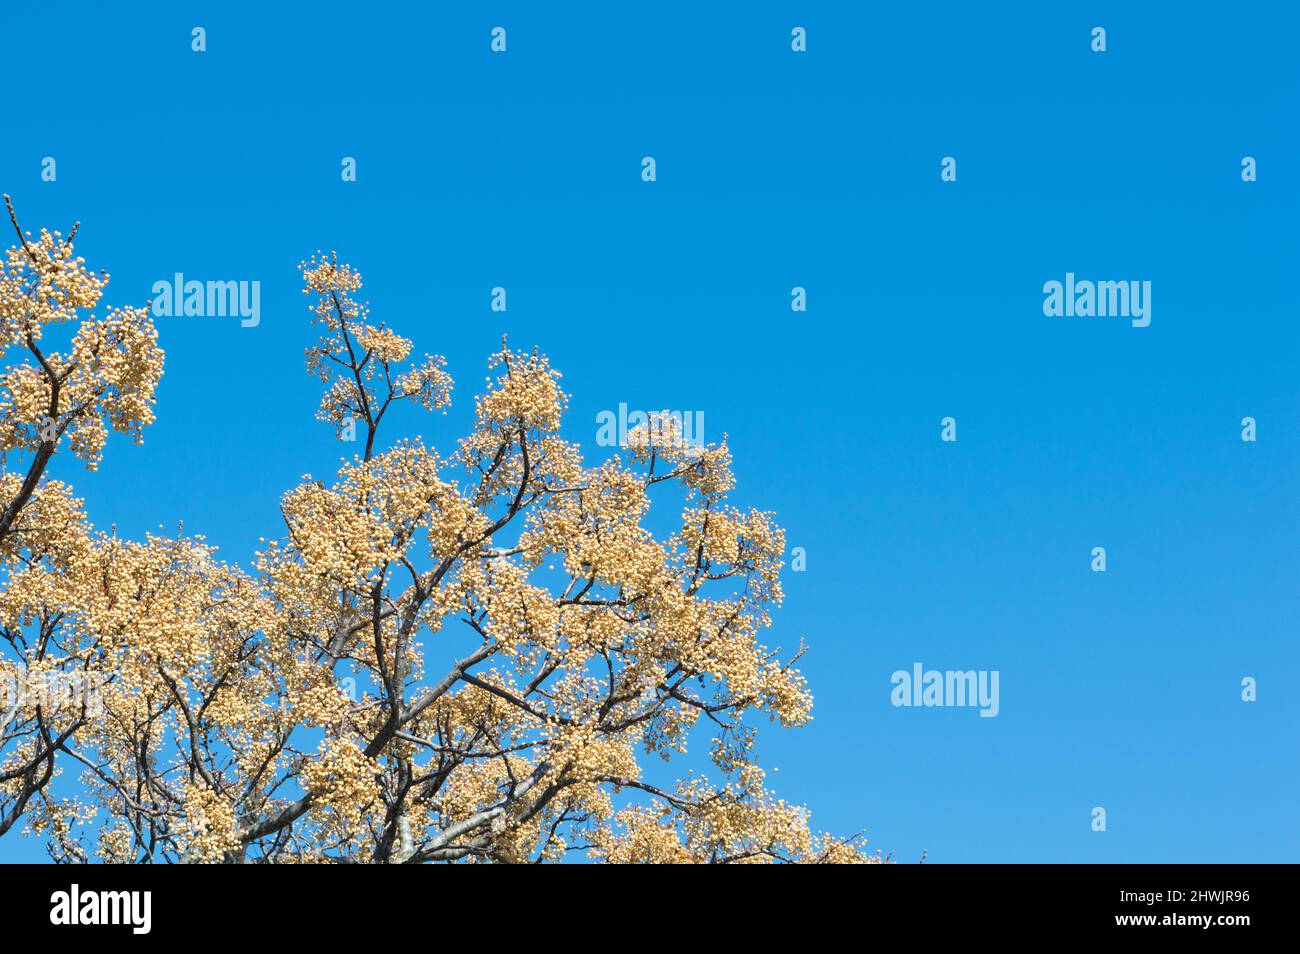 Steinfrucht von Melia azedarach, bekannt als Chinaberry-Baum im frühen Frühjahr Stockfoto